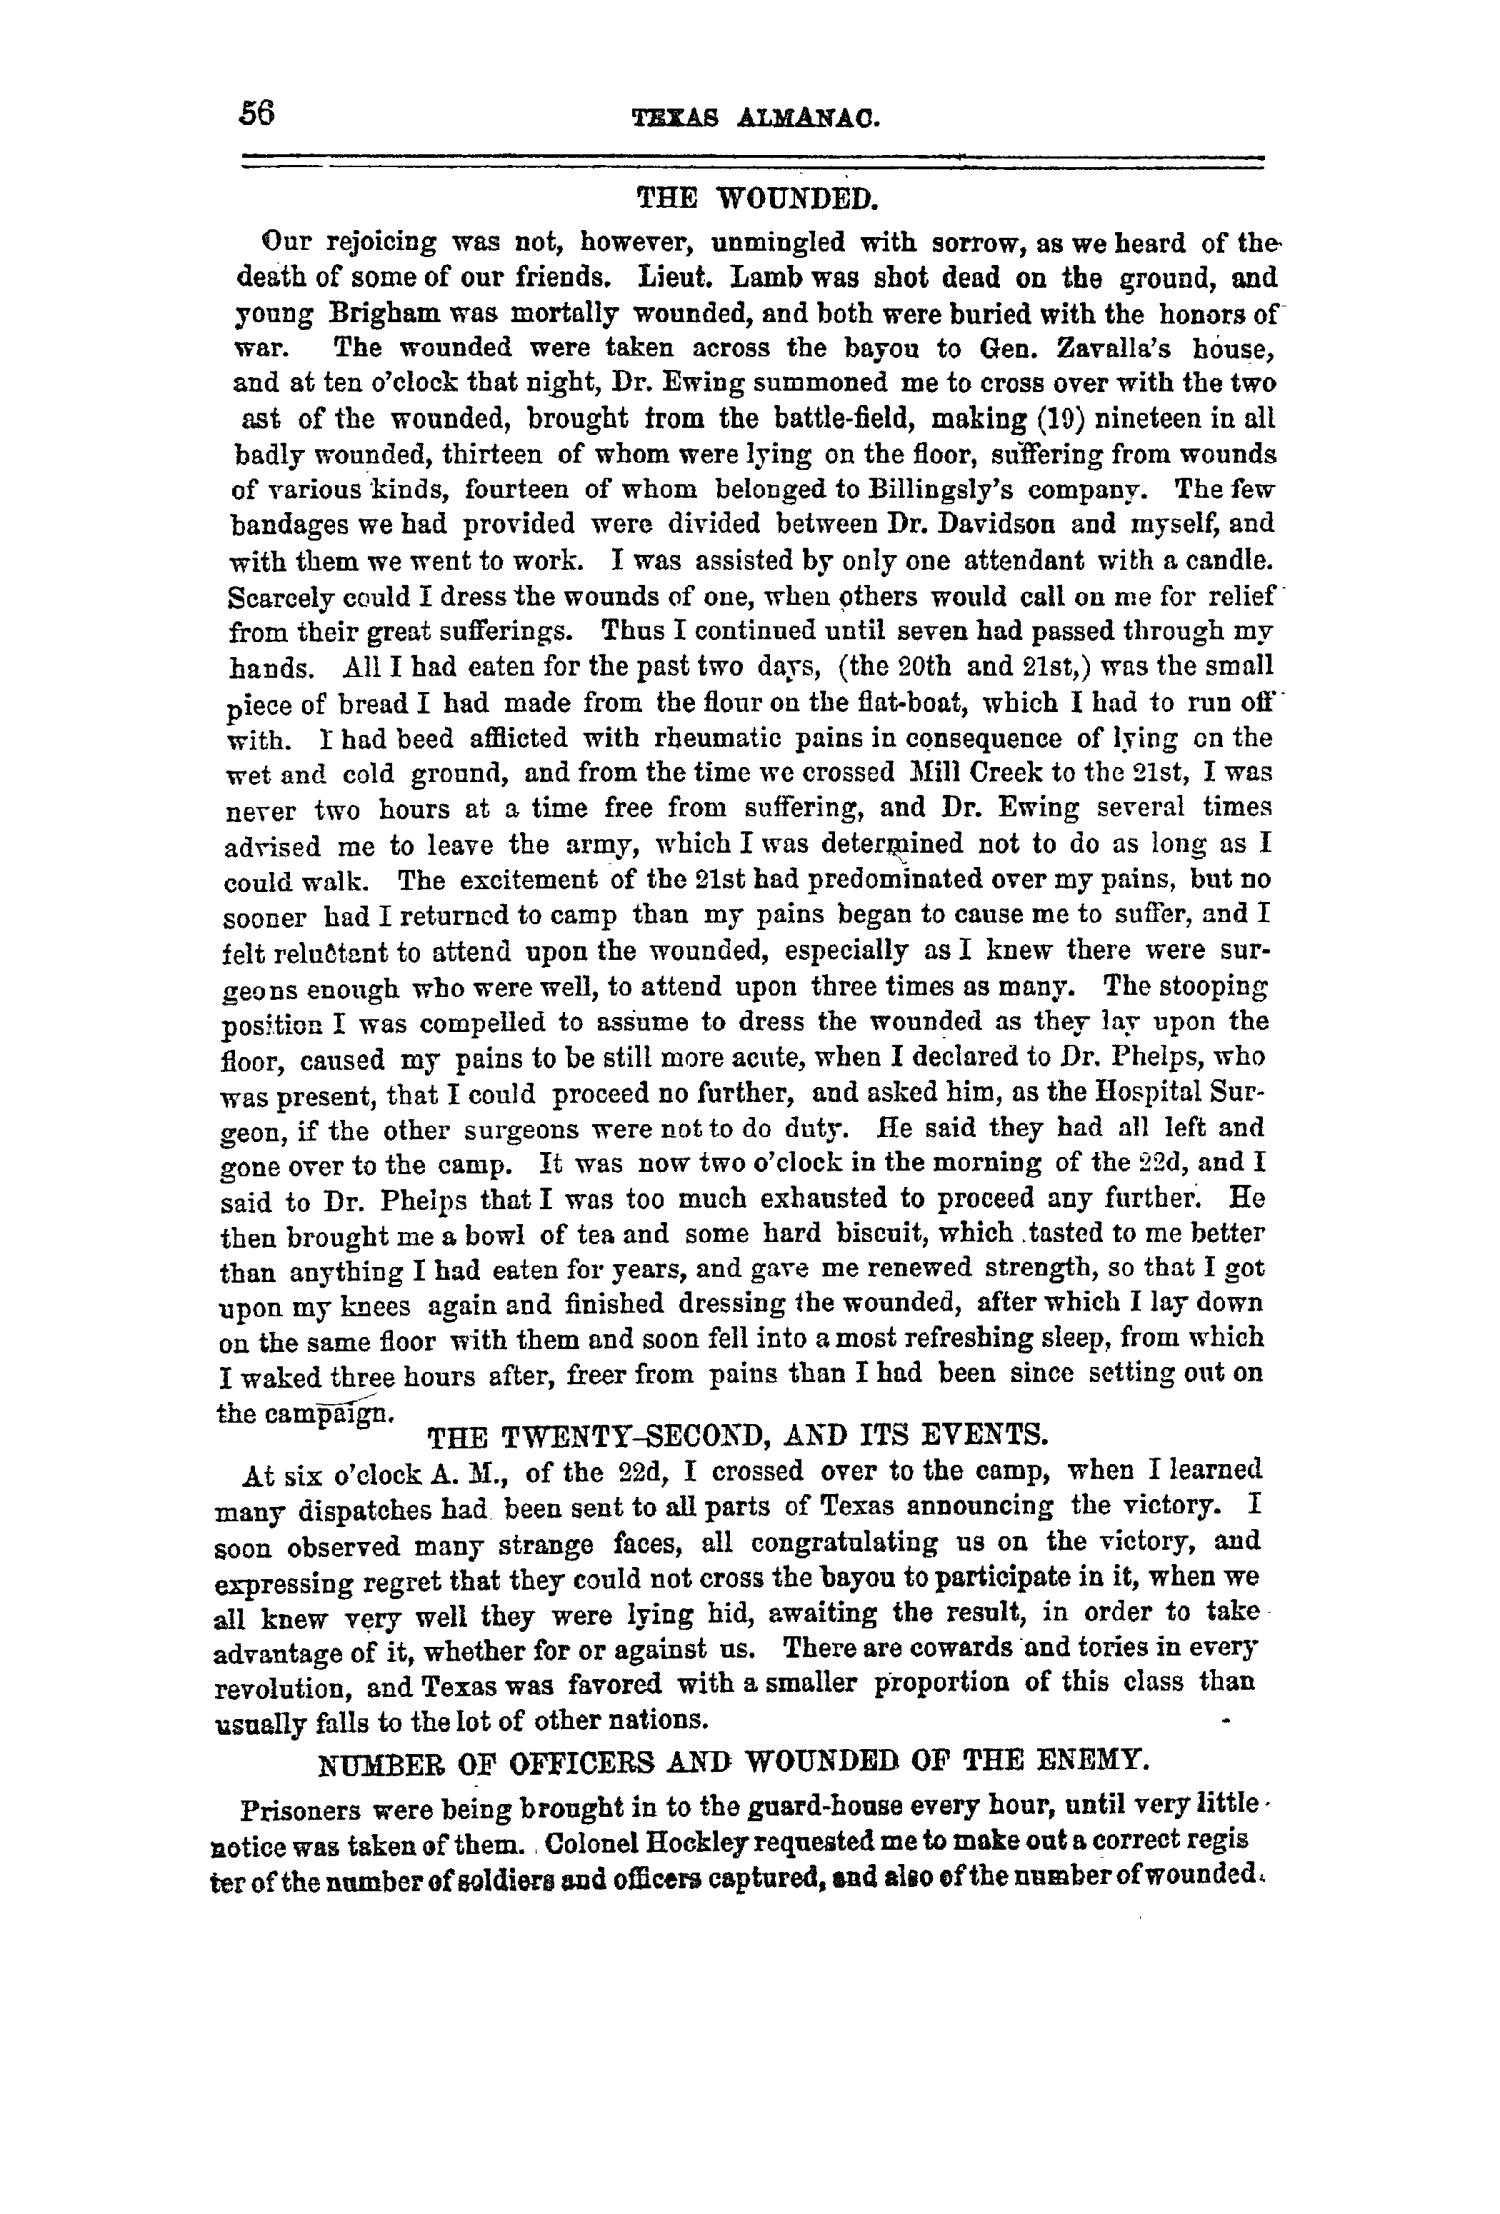 Texas Almanac, 1859
                                                
                                                    56
                                                